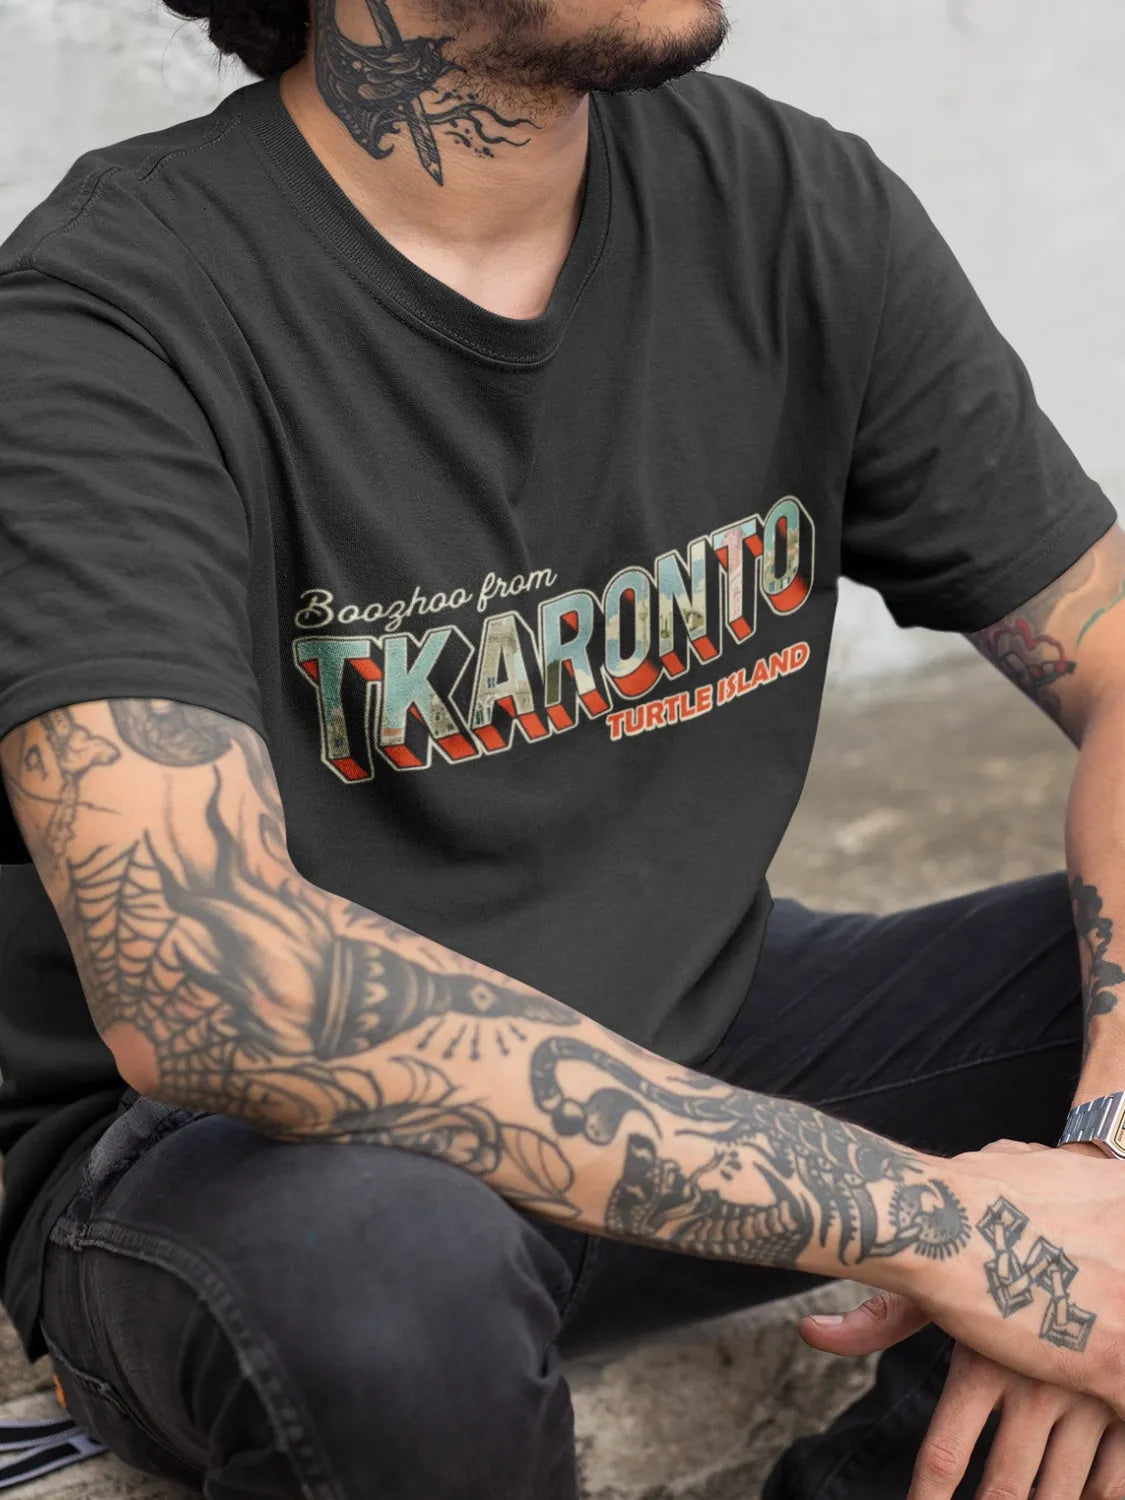 TKARONTO T-shirt